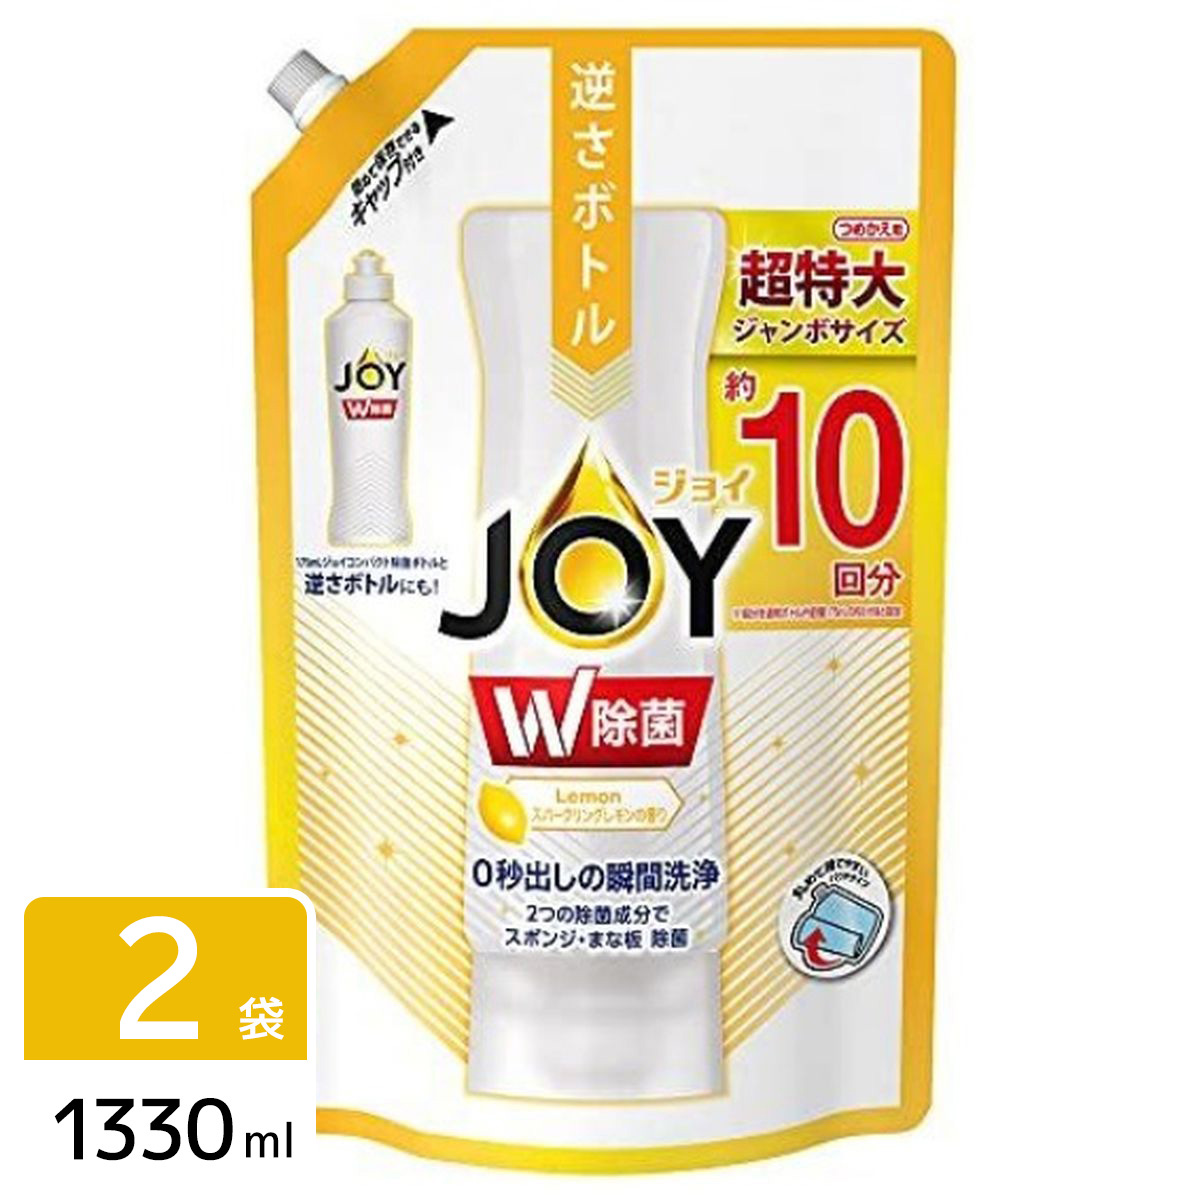 除菌ジョイ コンパクト 食器用洗剤 スパークリングレモンの香り 詰め替え ジャンボサイズ 1330ml 2袋